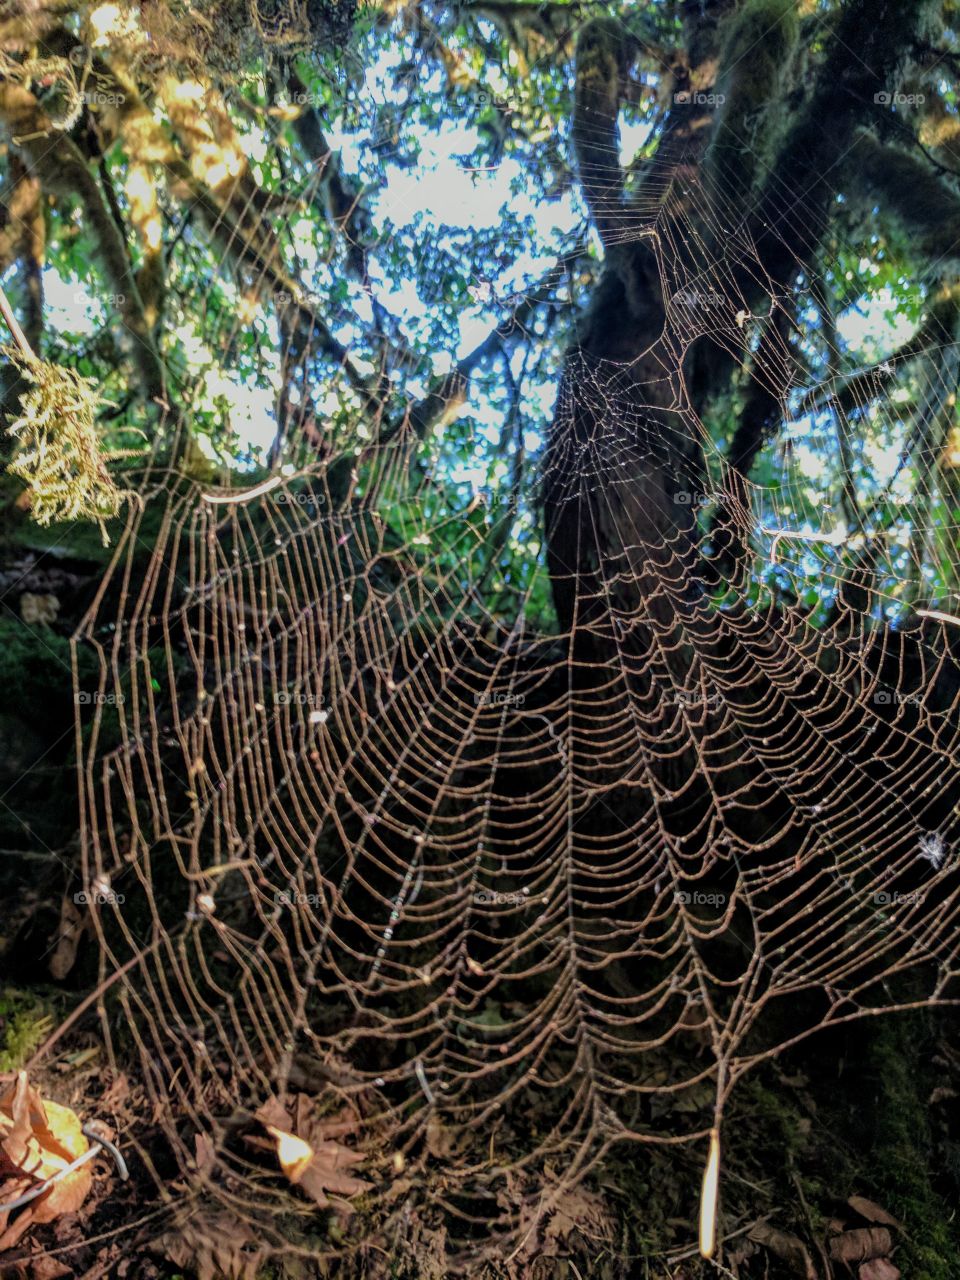 spider web glistening dew